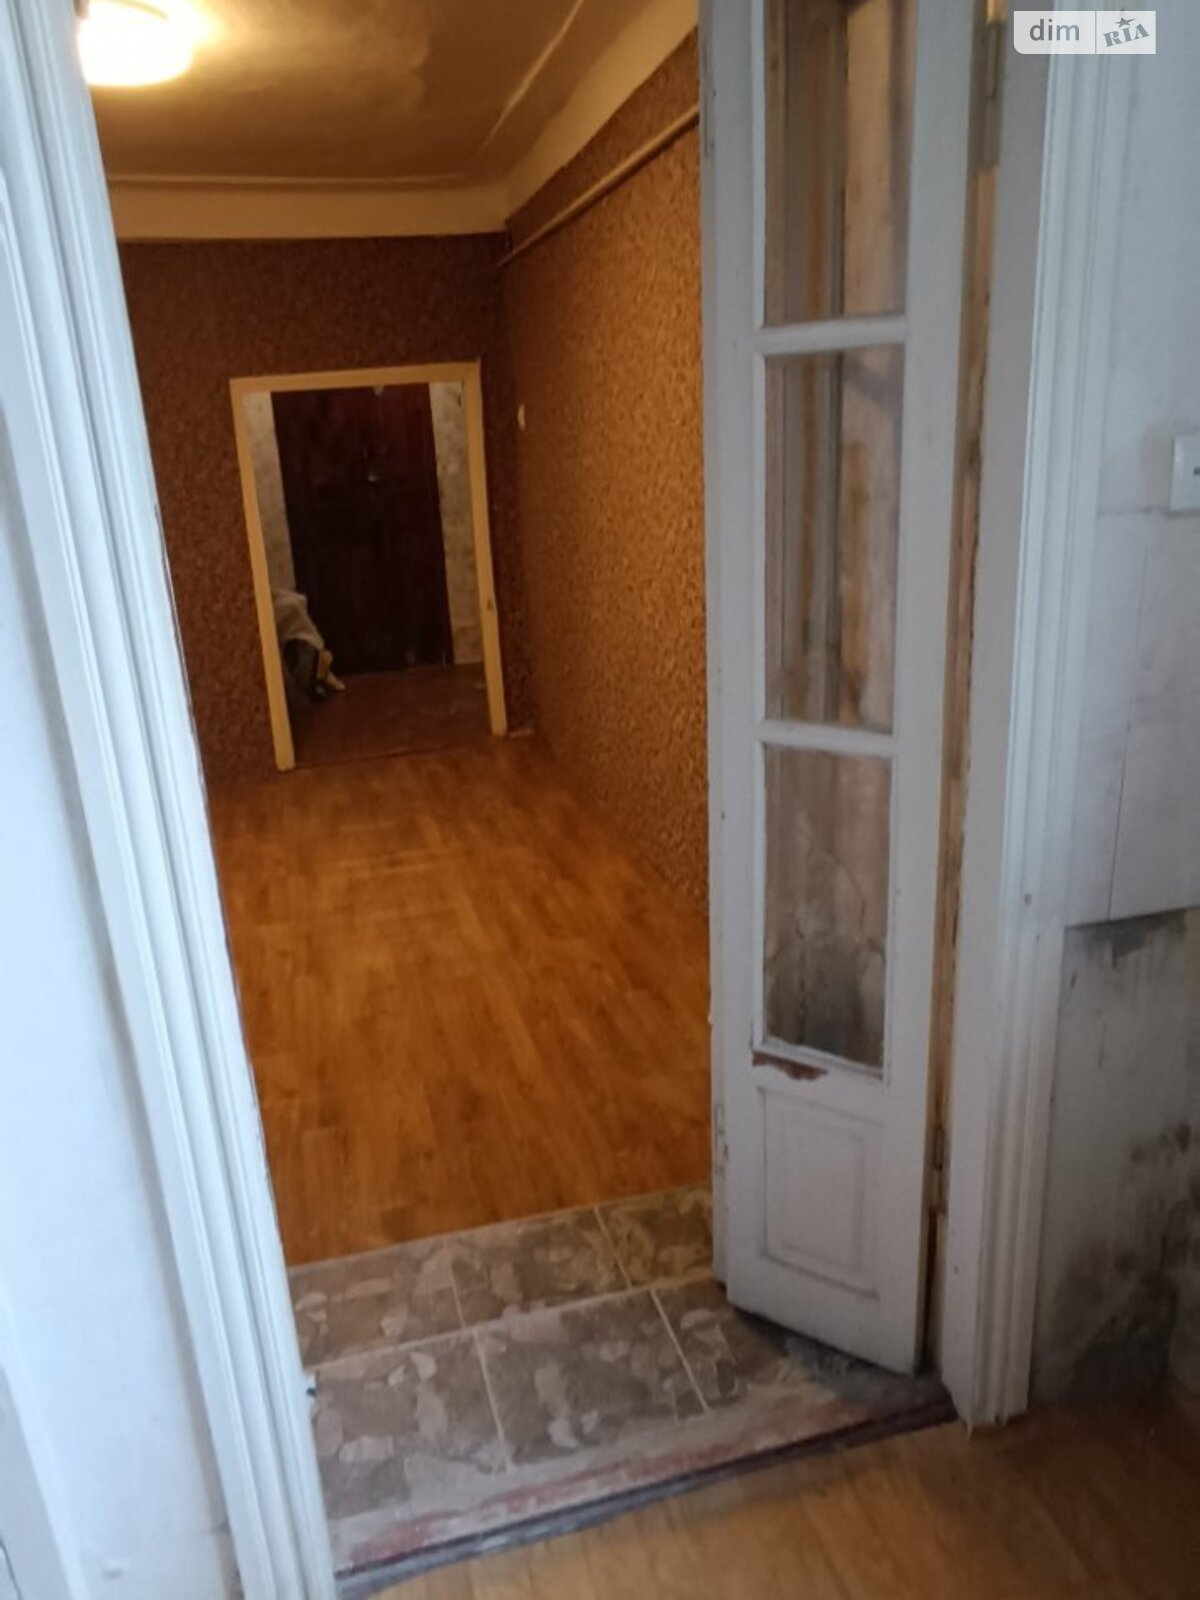 Продажа части дома в Николаеве, район Центр, 1 комната фото 1